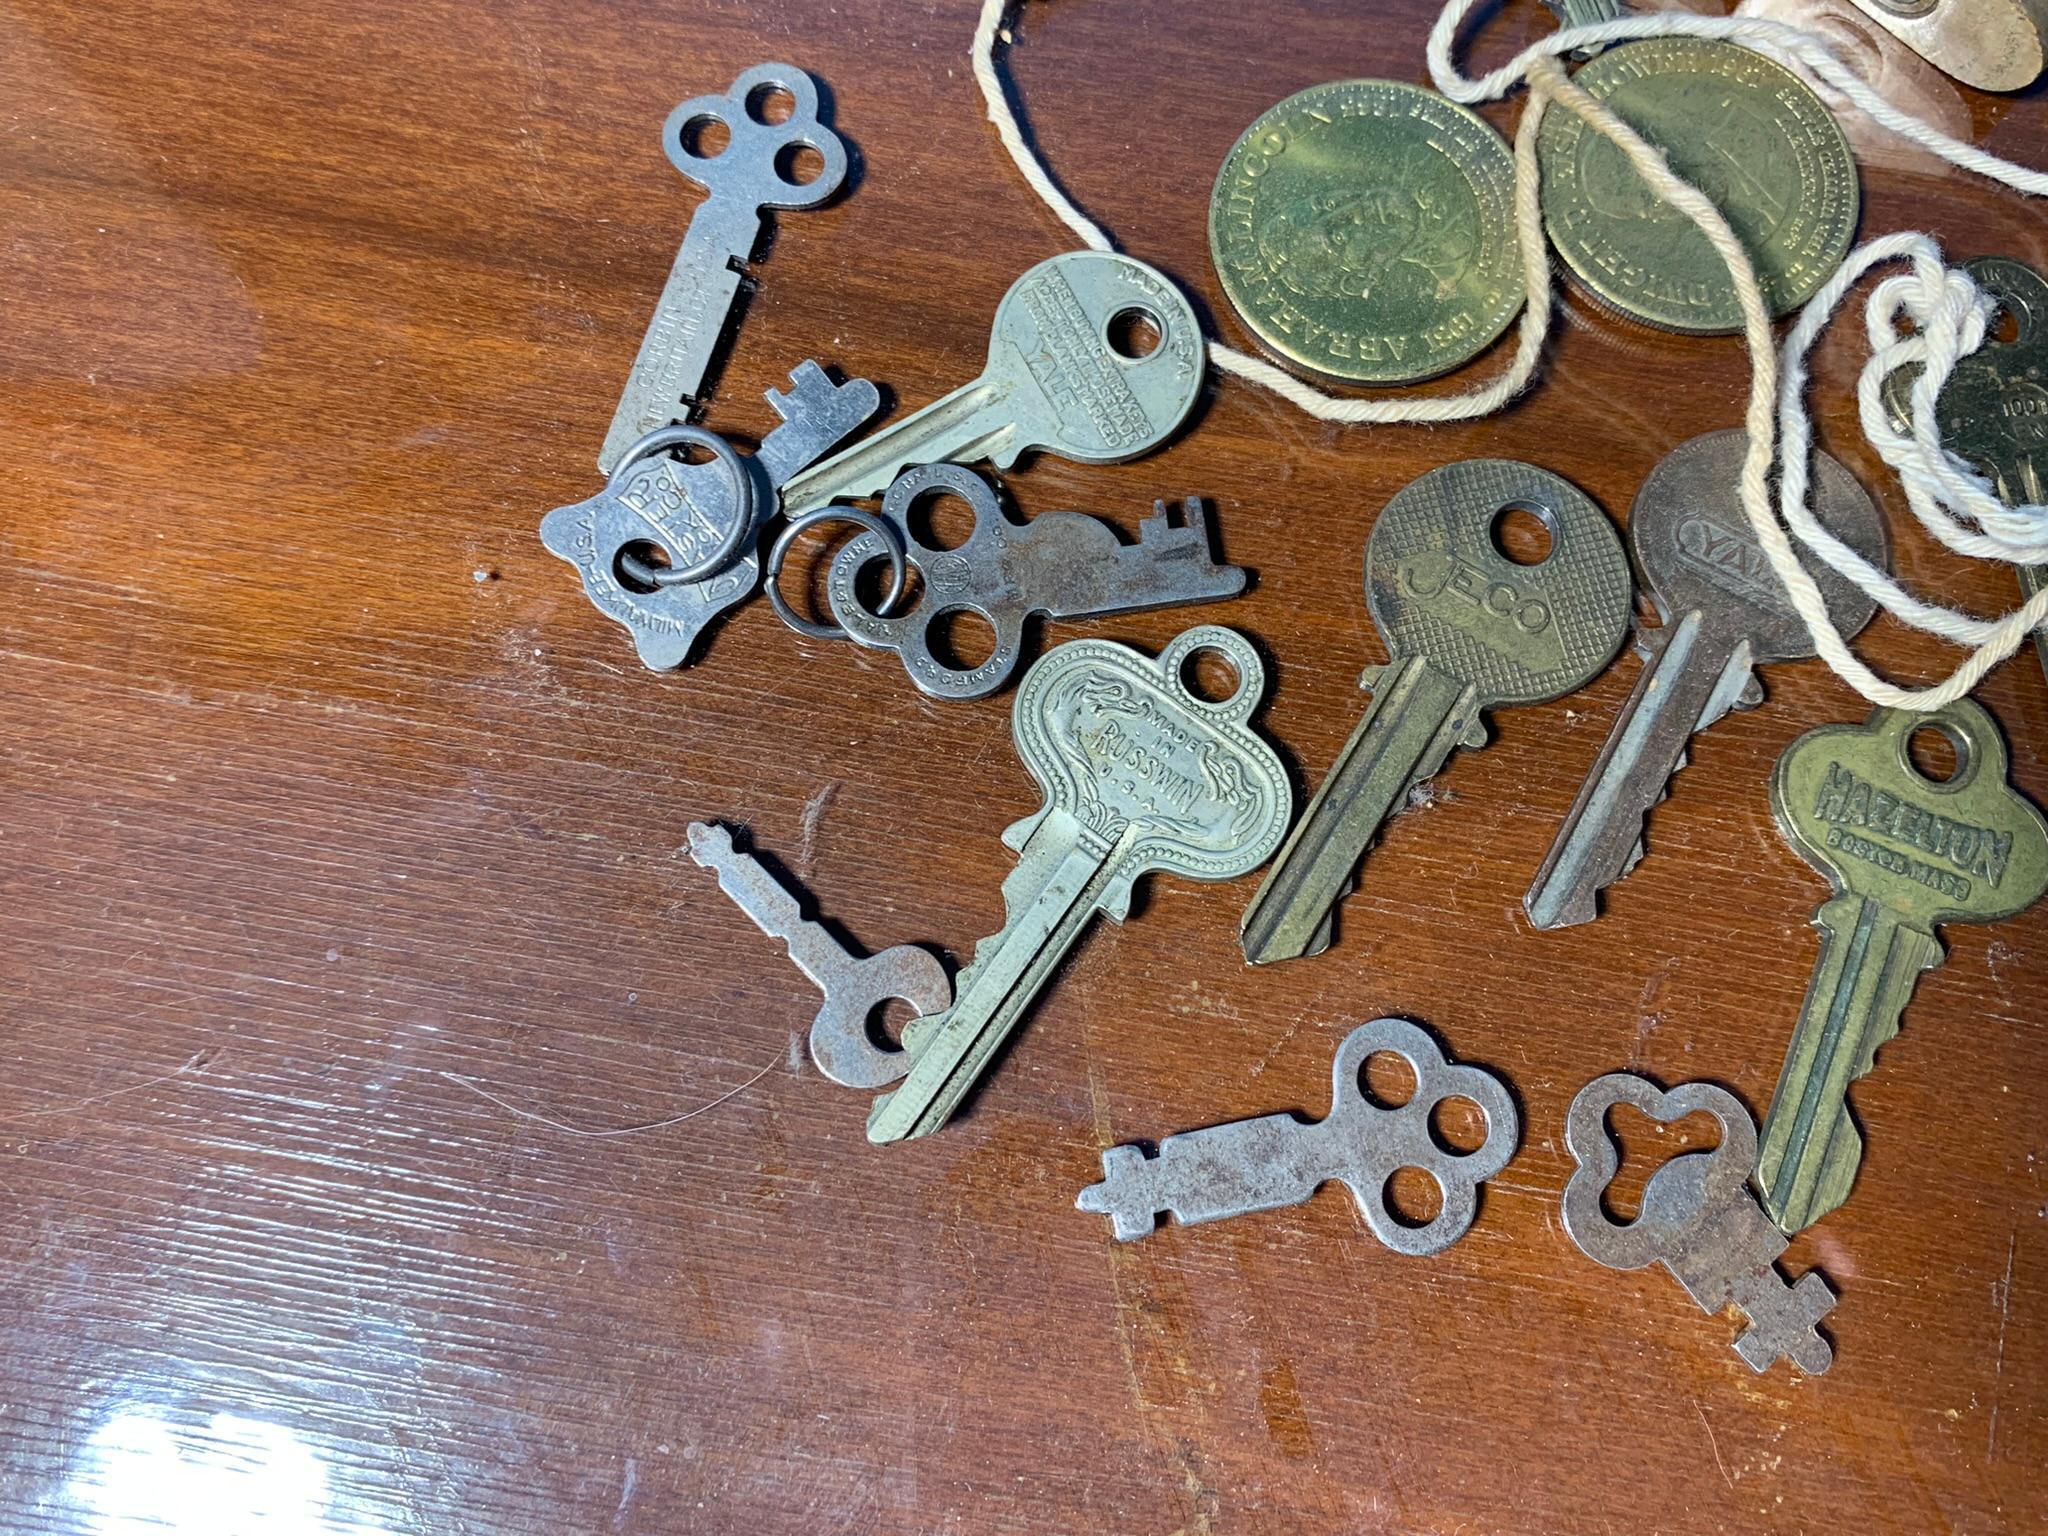 Group of Vintage Keys and Locks